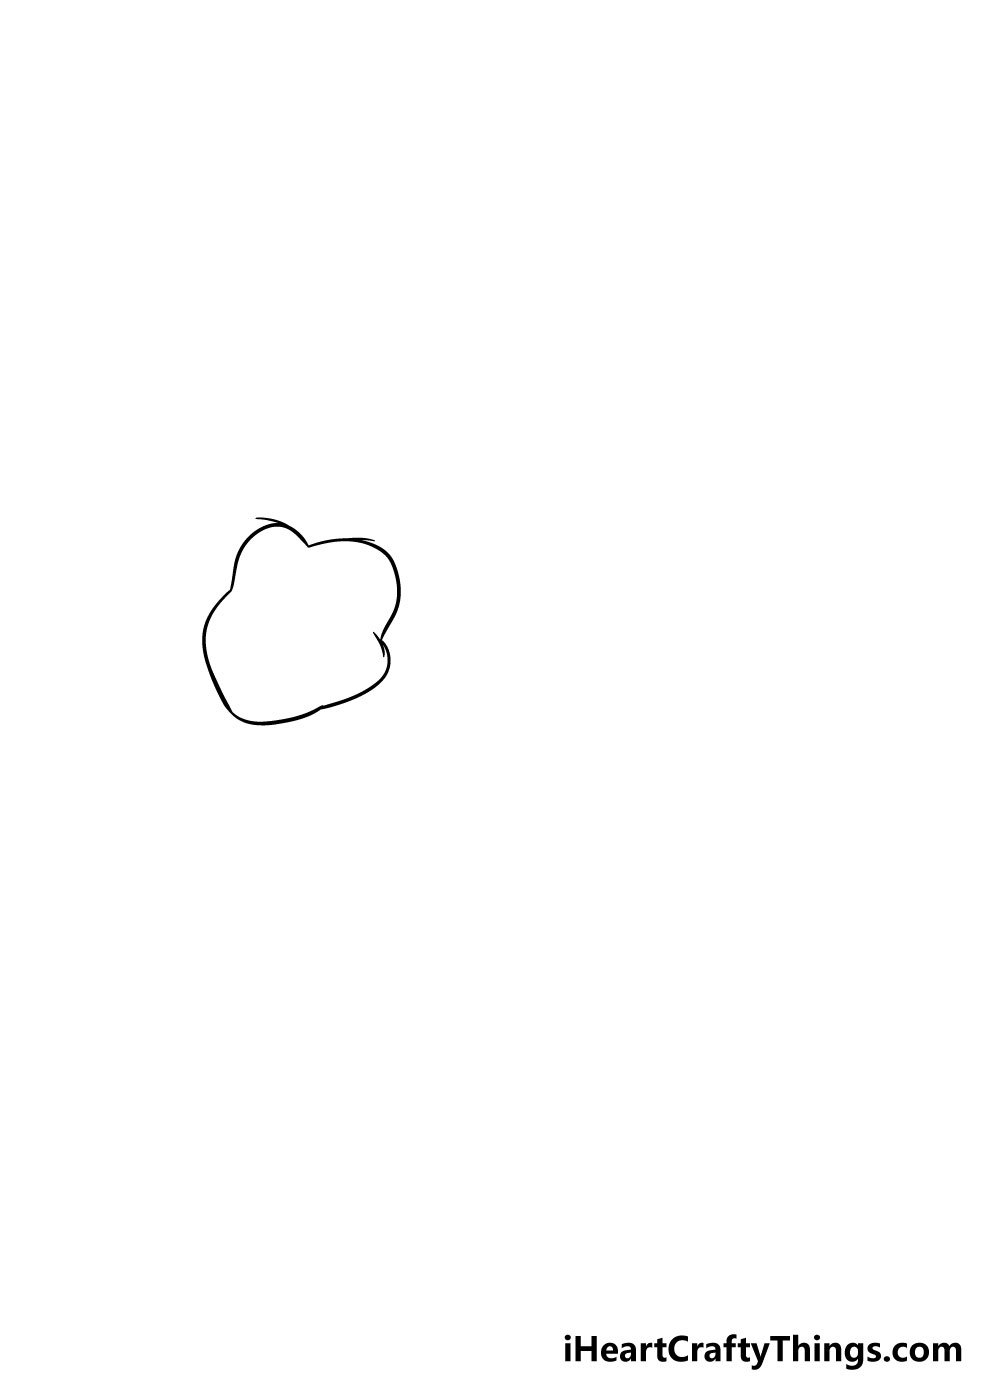 How to draw a lion 1 - Hướng dẫn cách vẽ con sư tử đơn giản với 8 bước cơ bản